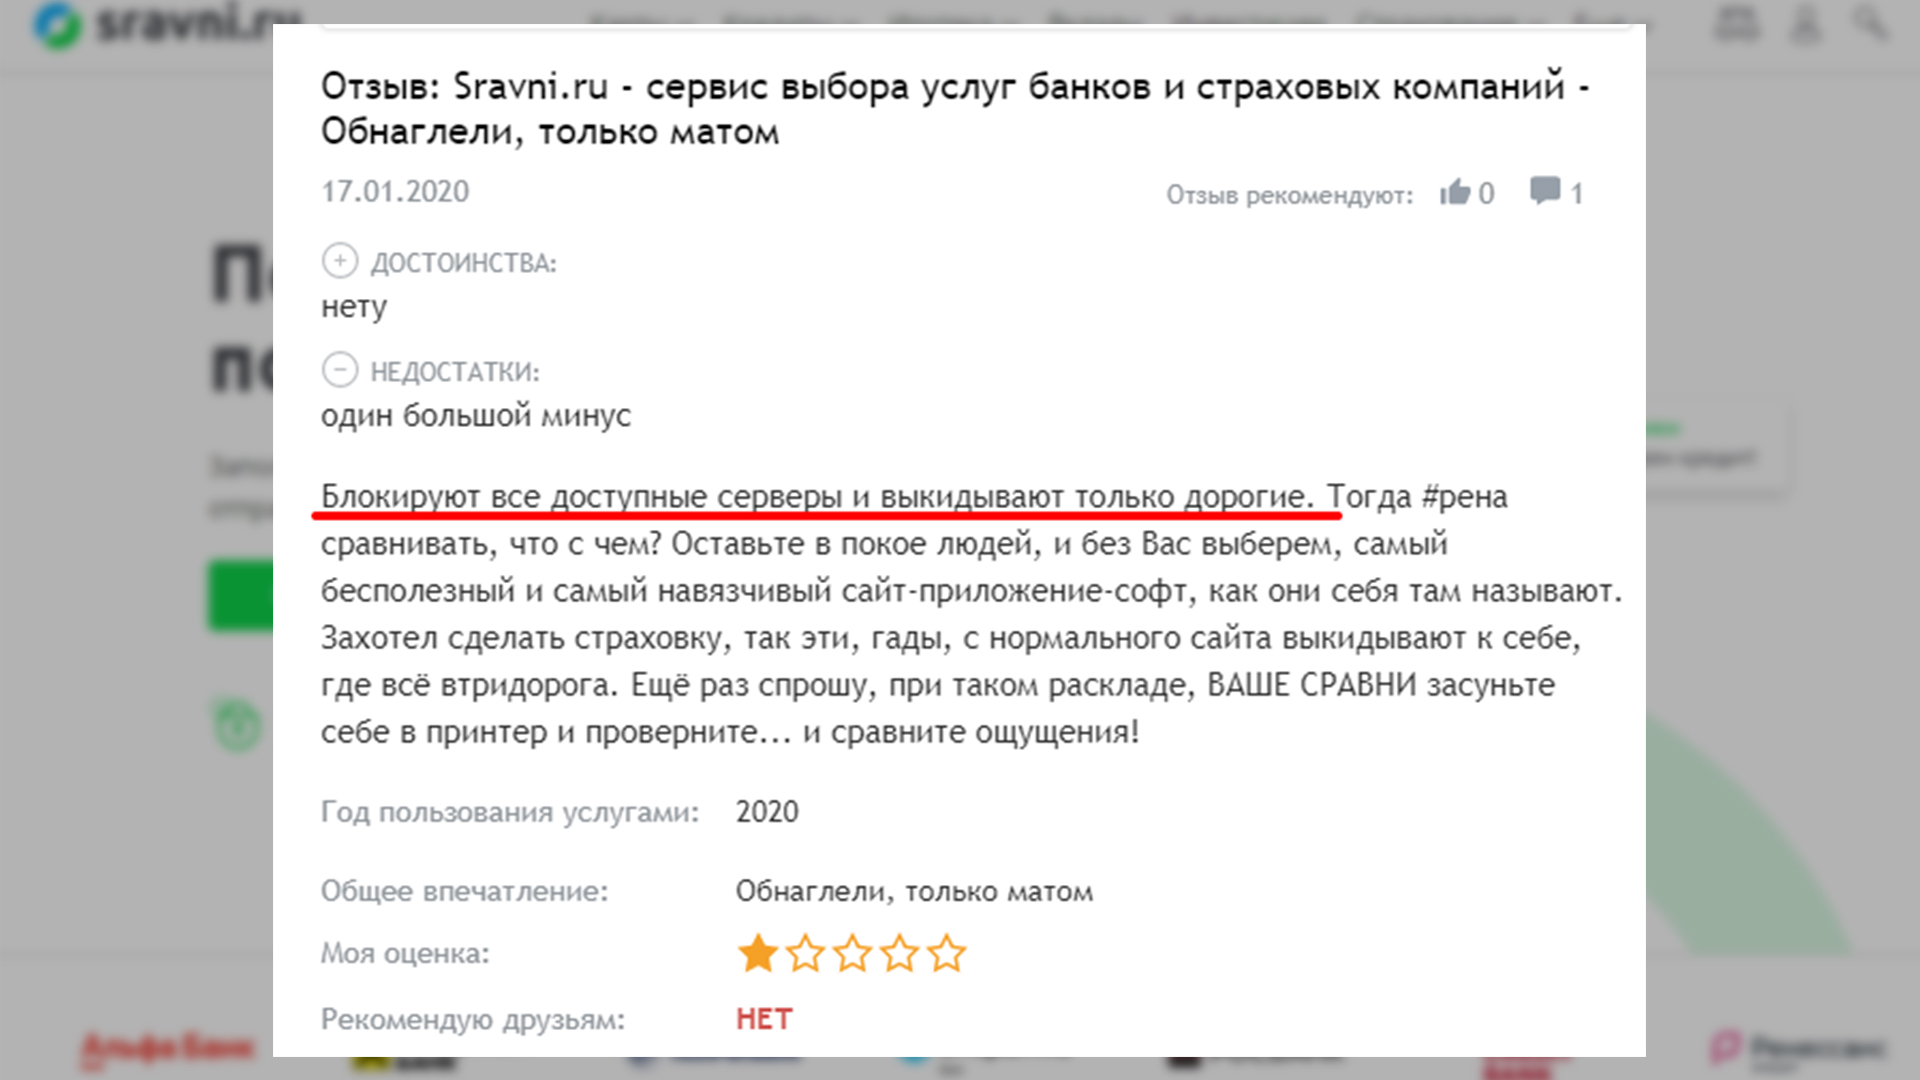 Скриншот негативного отзыва о покупке страховки через Сравни.ру.